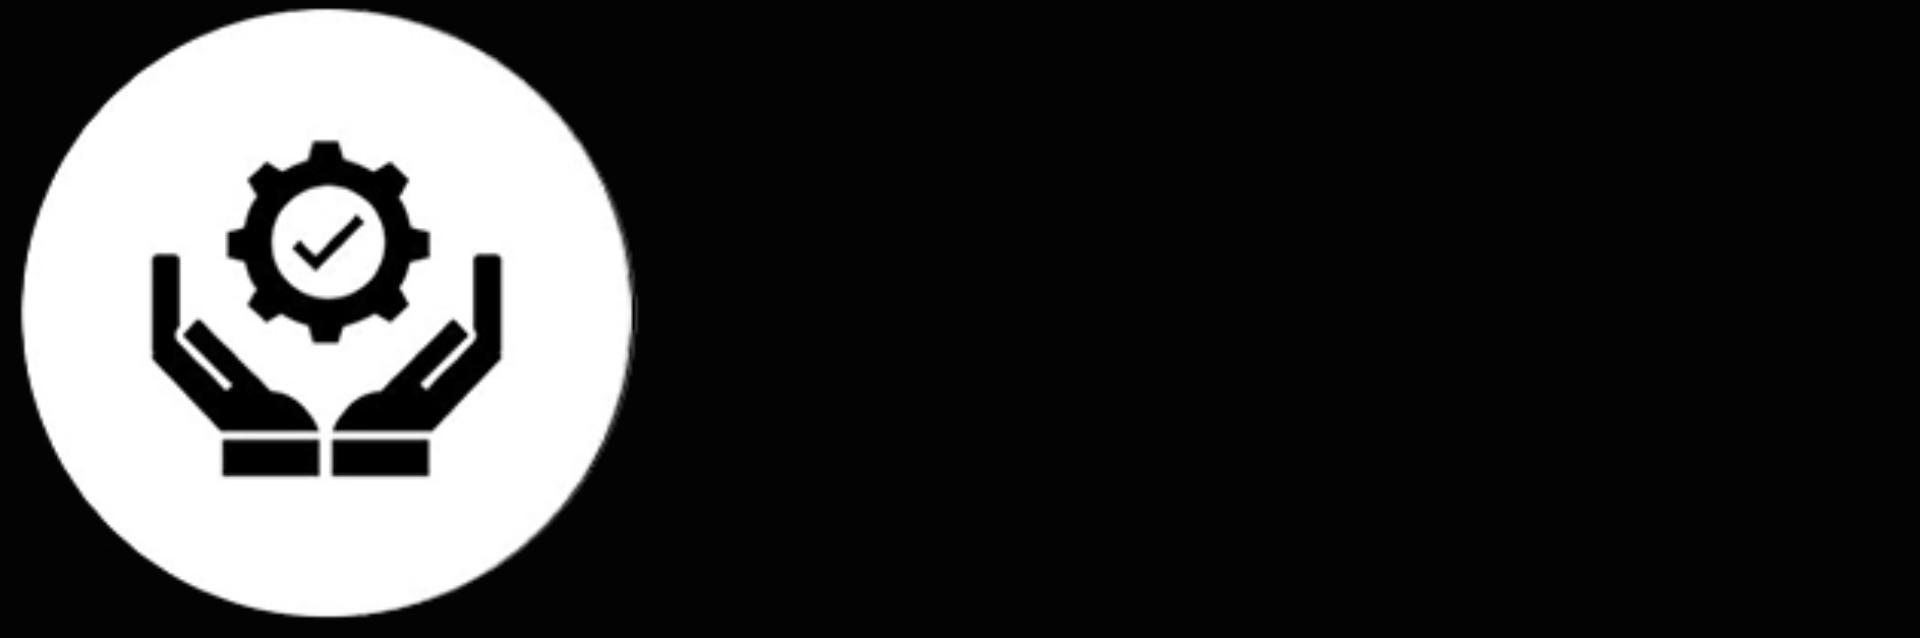 Fekete fehér ikon amelyen egy kéz tart egy kört, benne egy pipával a közepén